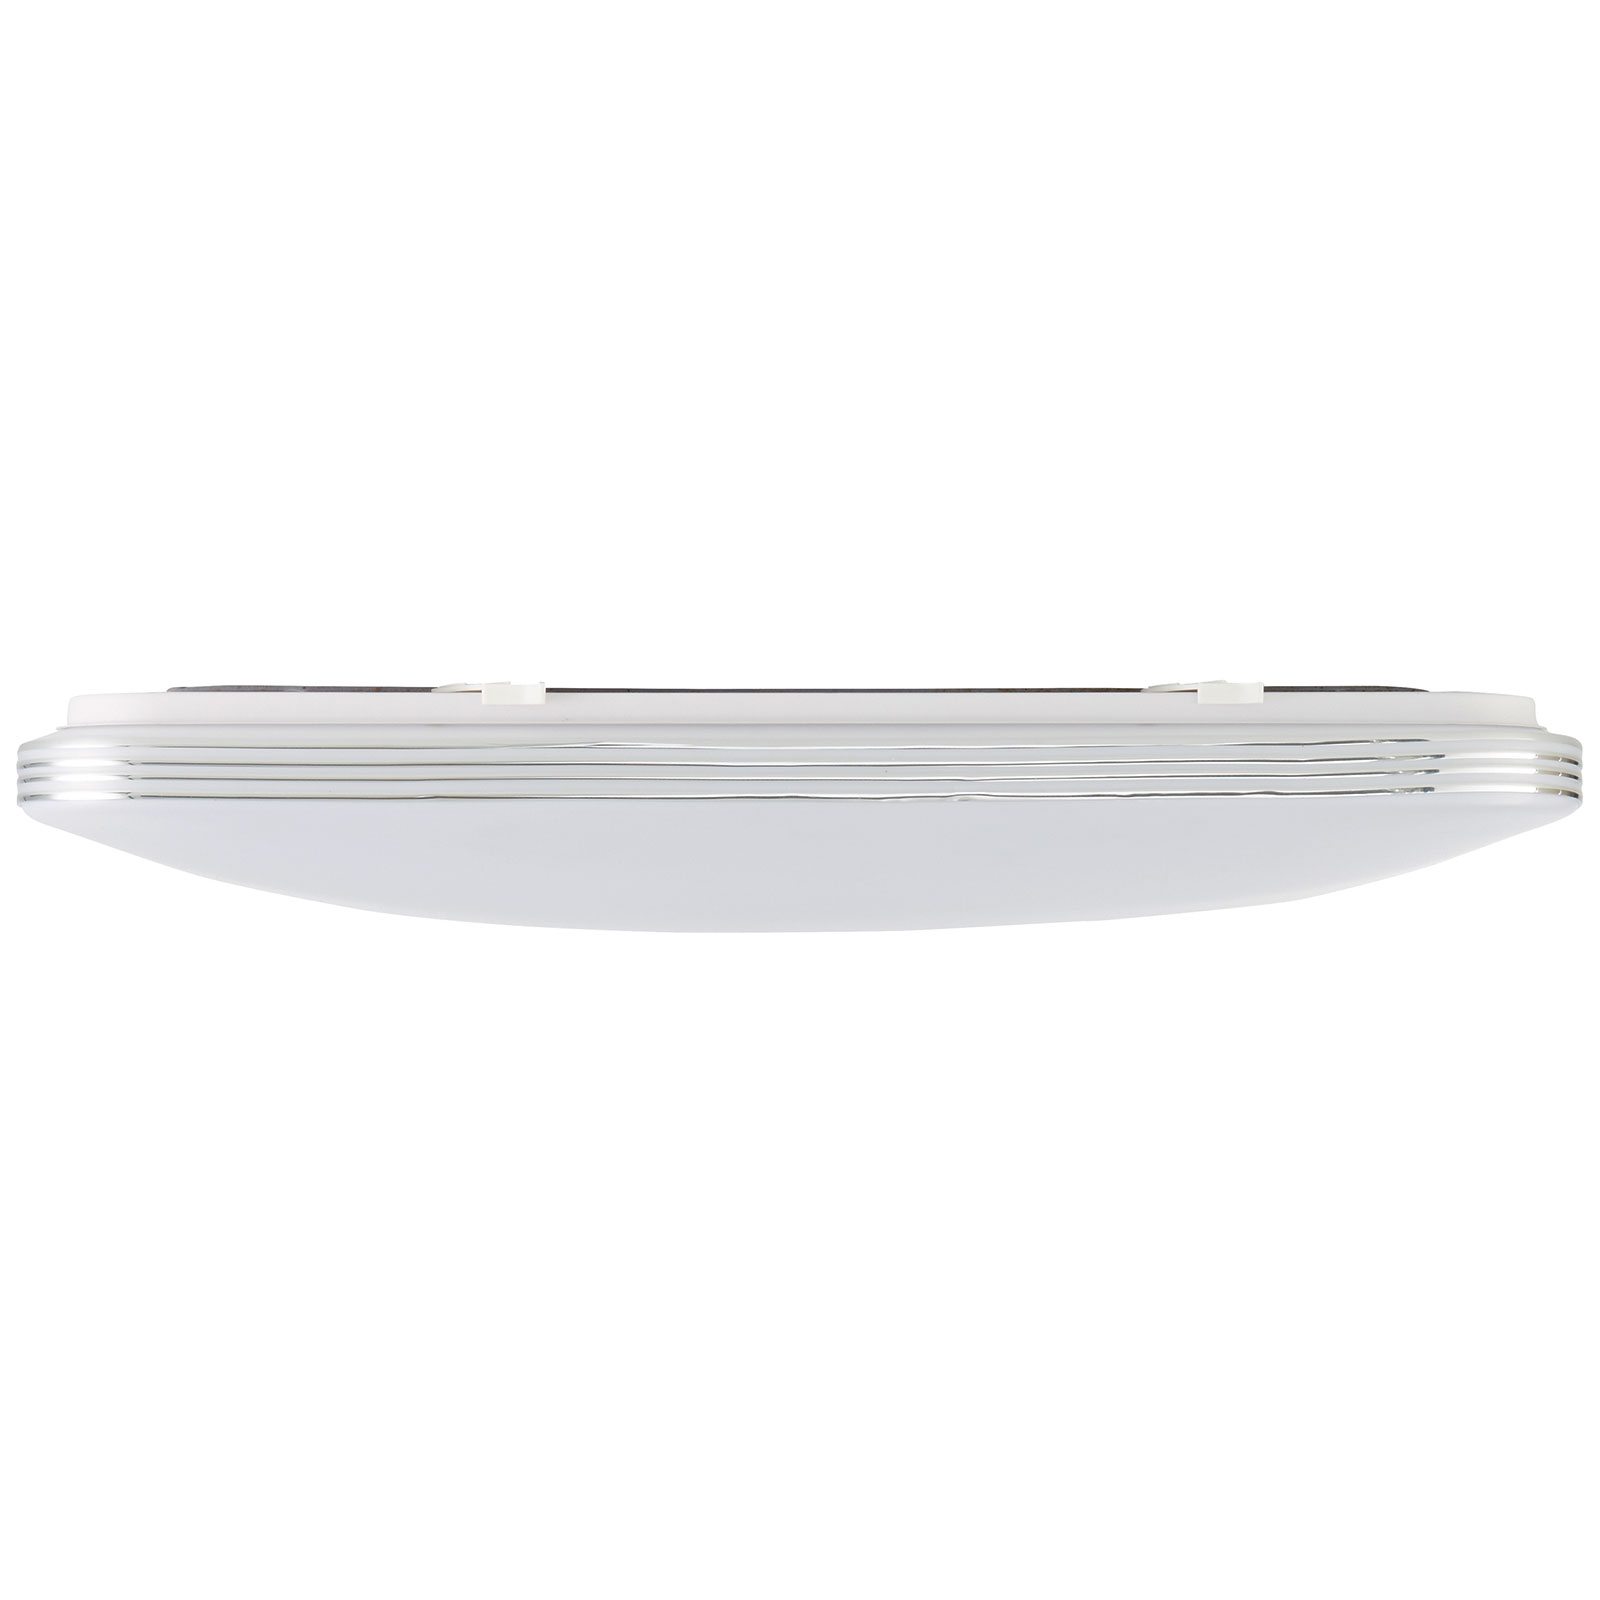 LED-taklampa Ariella i vitt/krom, 54 x 54 cm